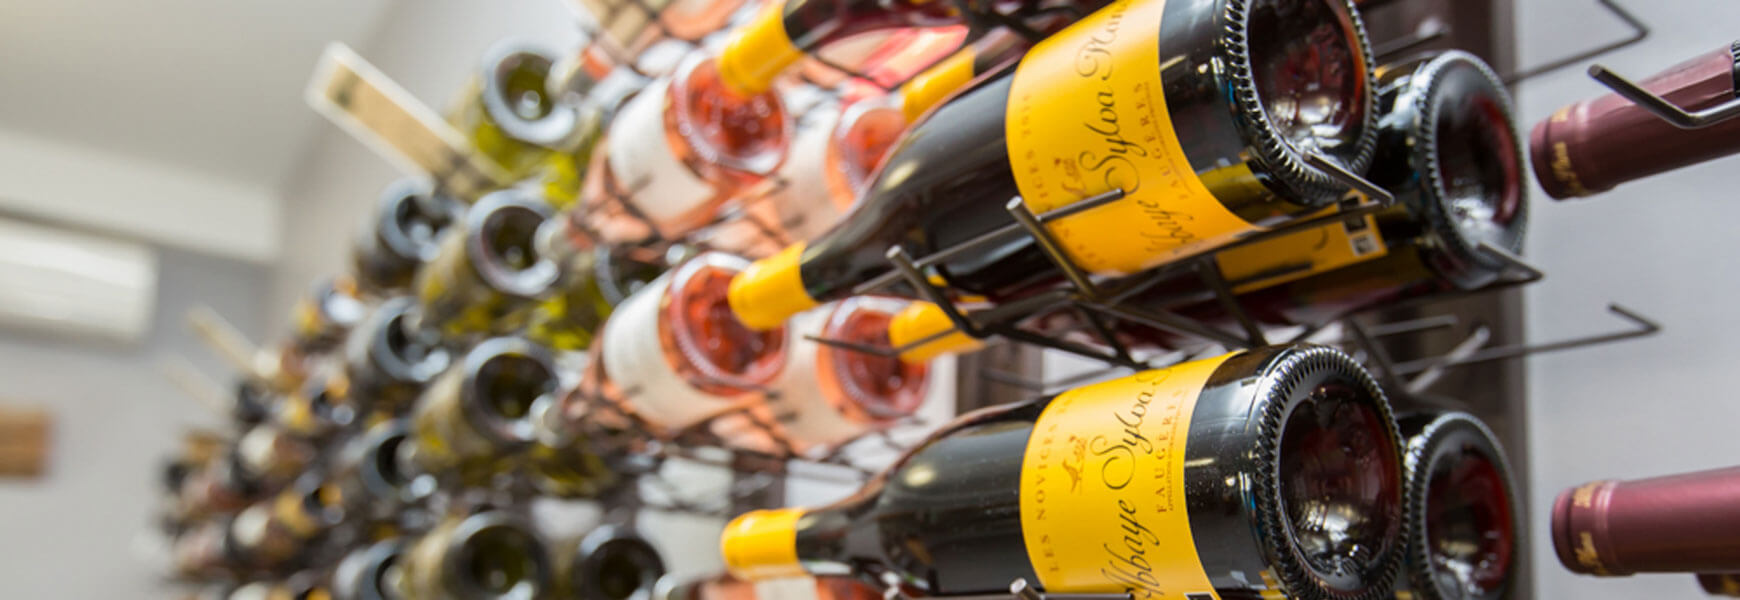 IGP Côtes de Thongue : les vins du domaine Deshenry's propriété des vignobles Bouchard